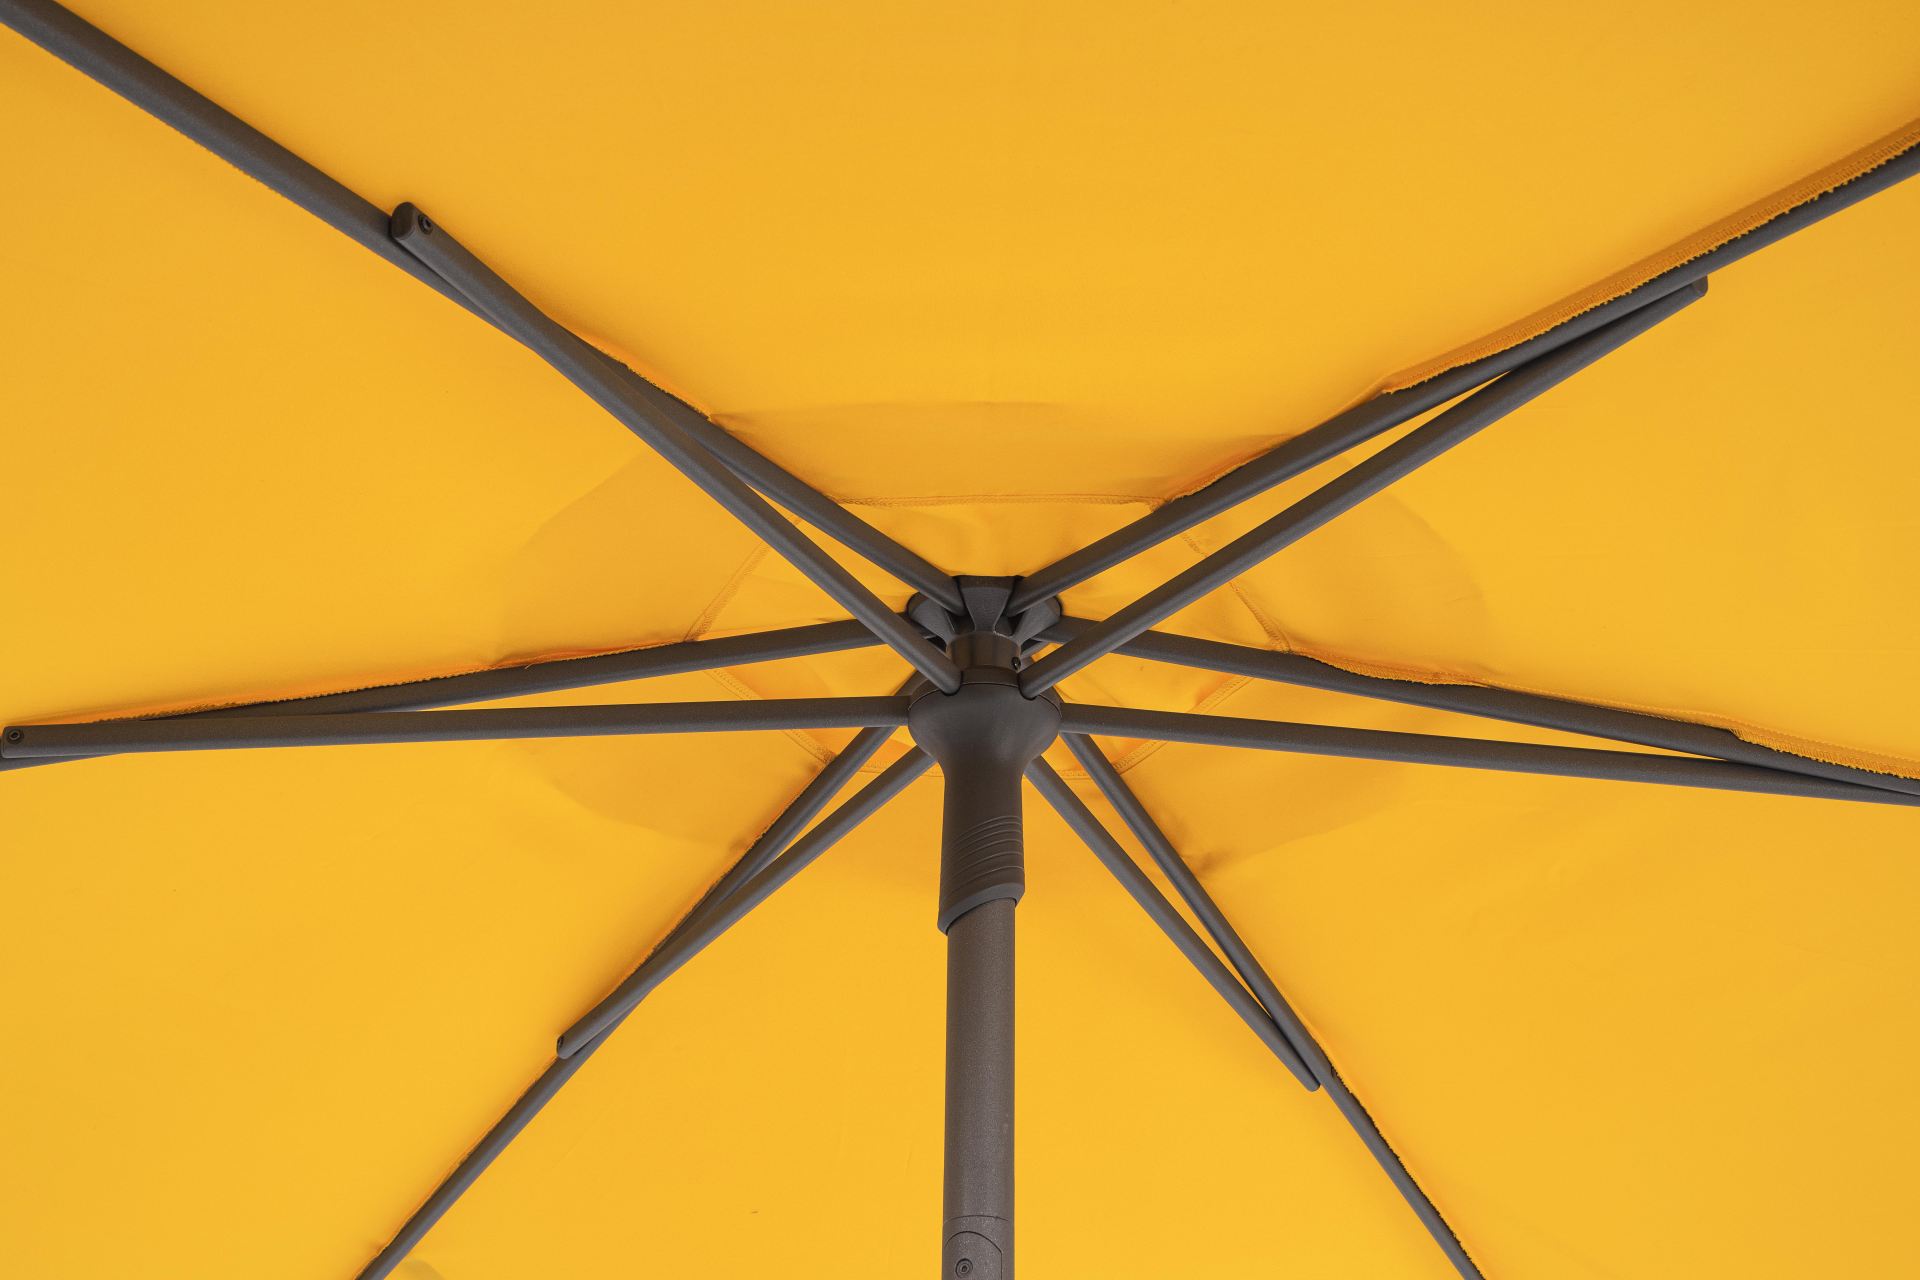 Der Sonnenschirm Samba überzeugt mit seinem klassischen Design. Gefertigt wurde er aus einer Polyester Plane, welche einen gelben Farbton besitzt. Das Gestell ist aus Metall und hat eine Anthrazit Farbe. Der Sonnenschirm verfügt über einen Durchmesser von